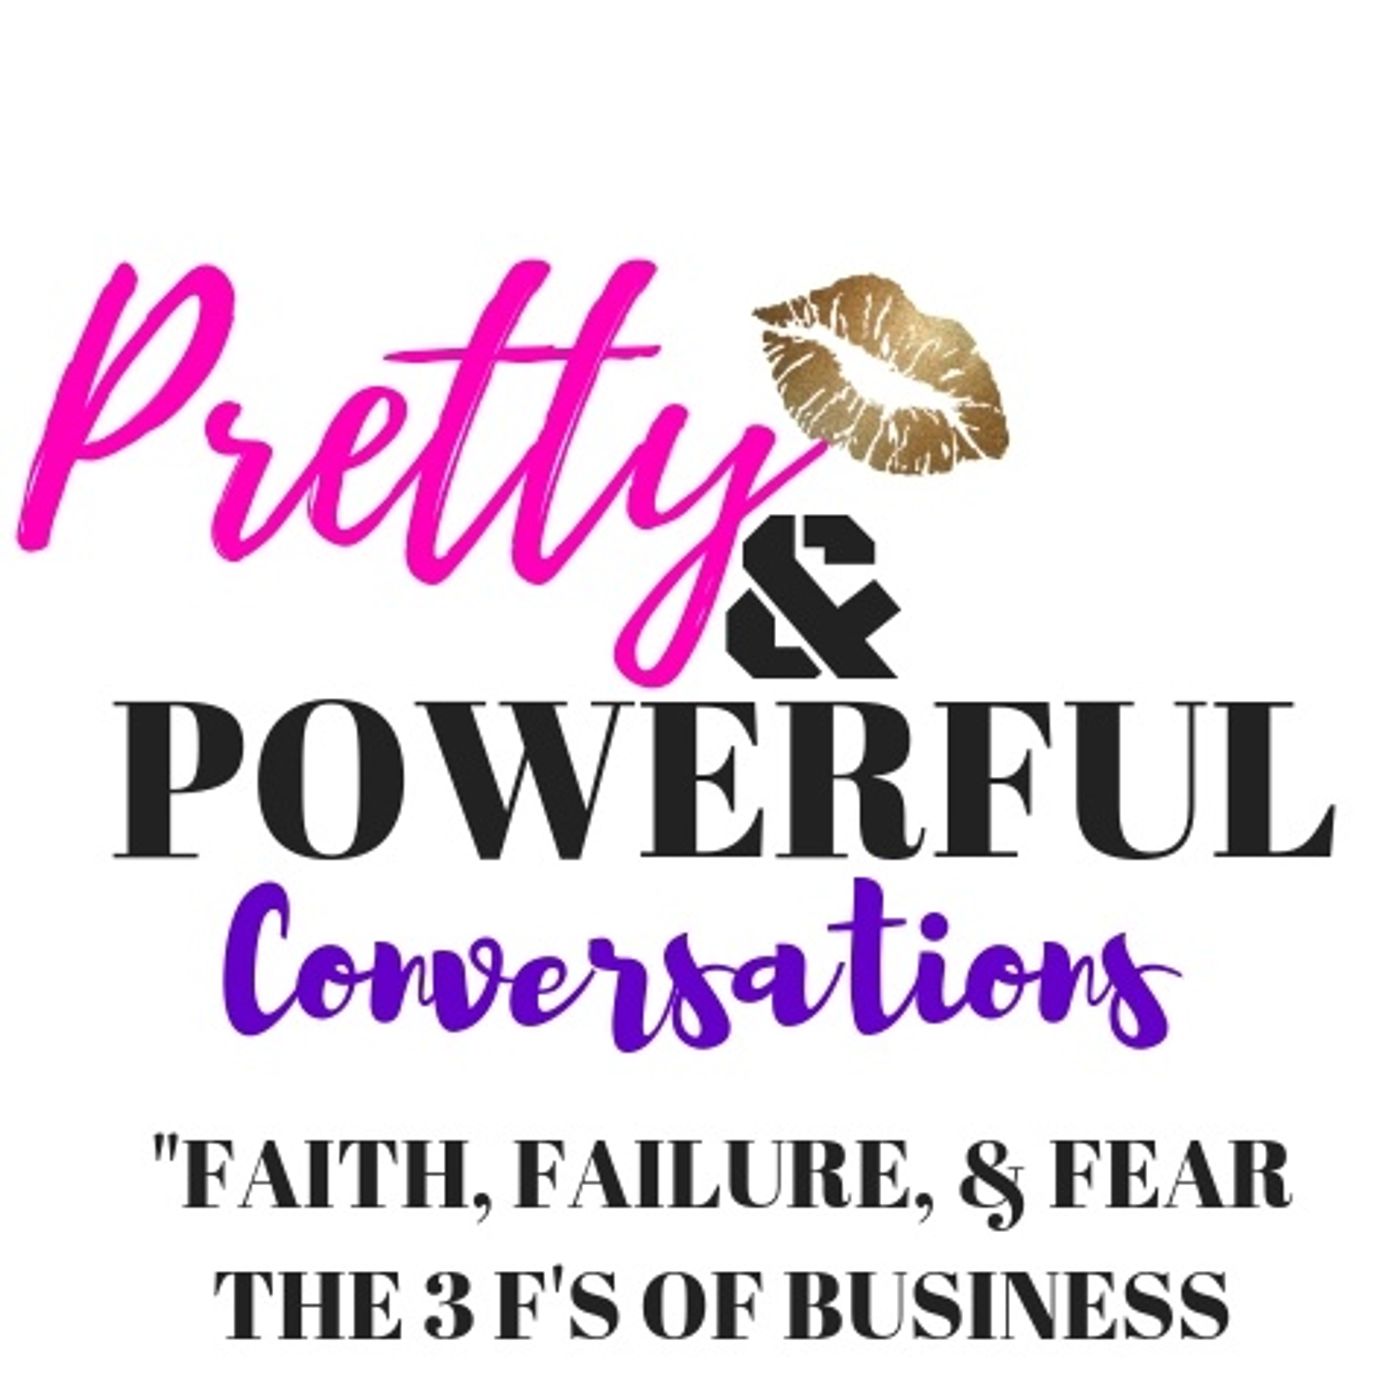 The 3 F's of Business: Fear, Failure, & Faith